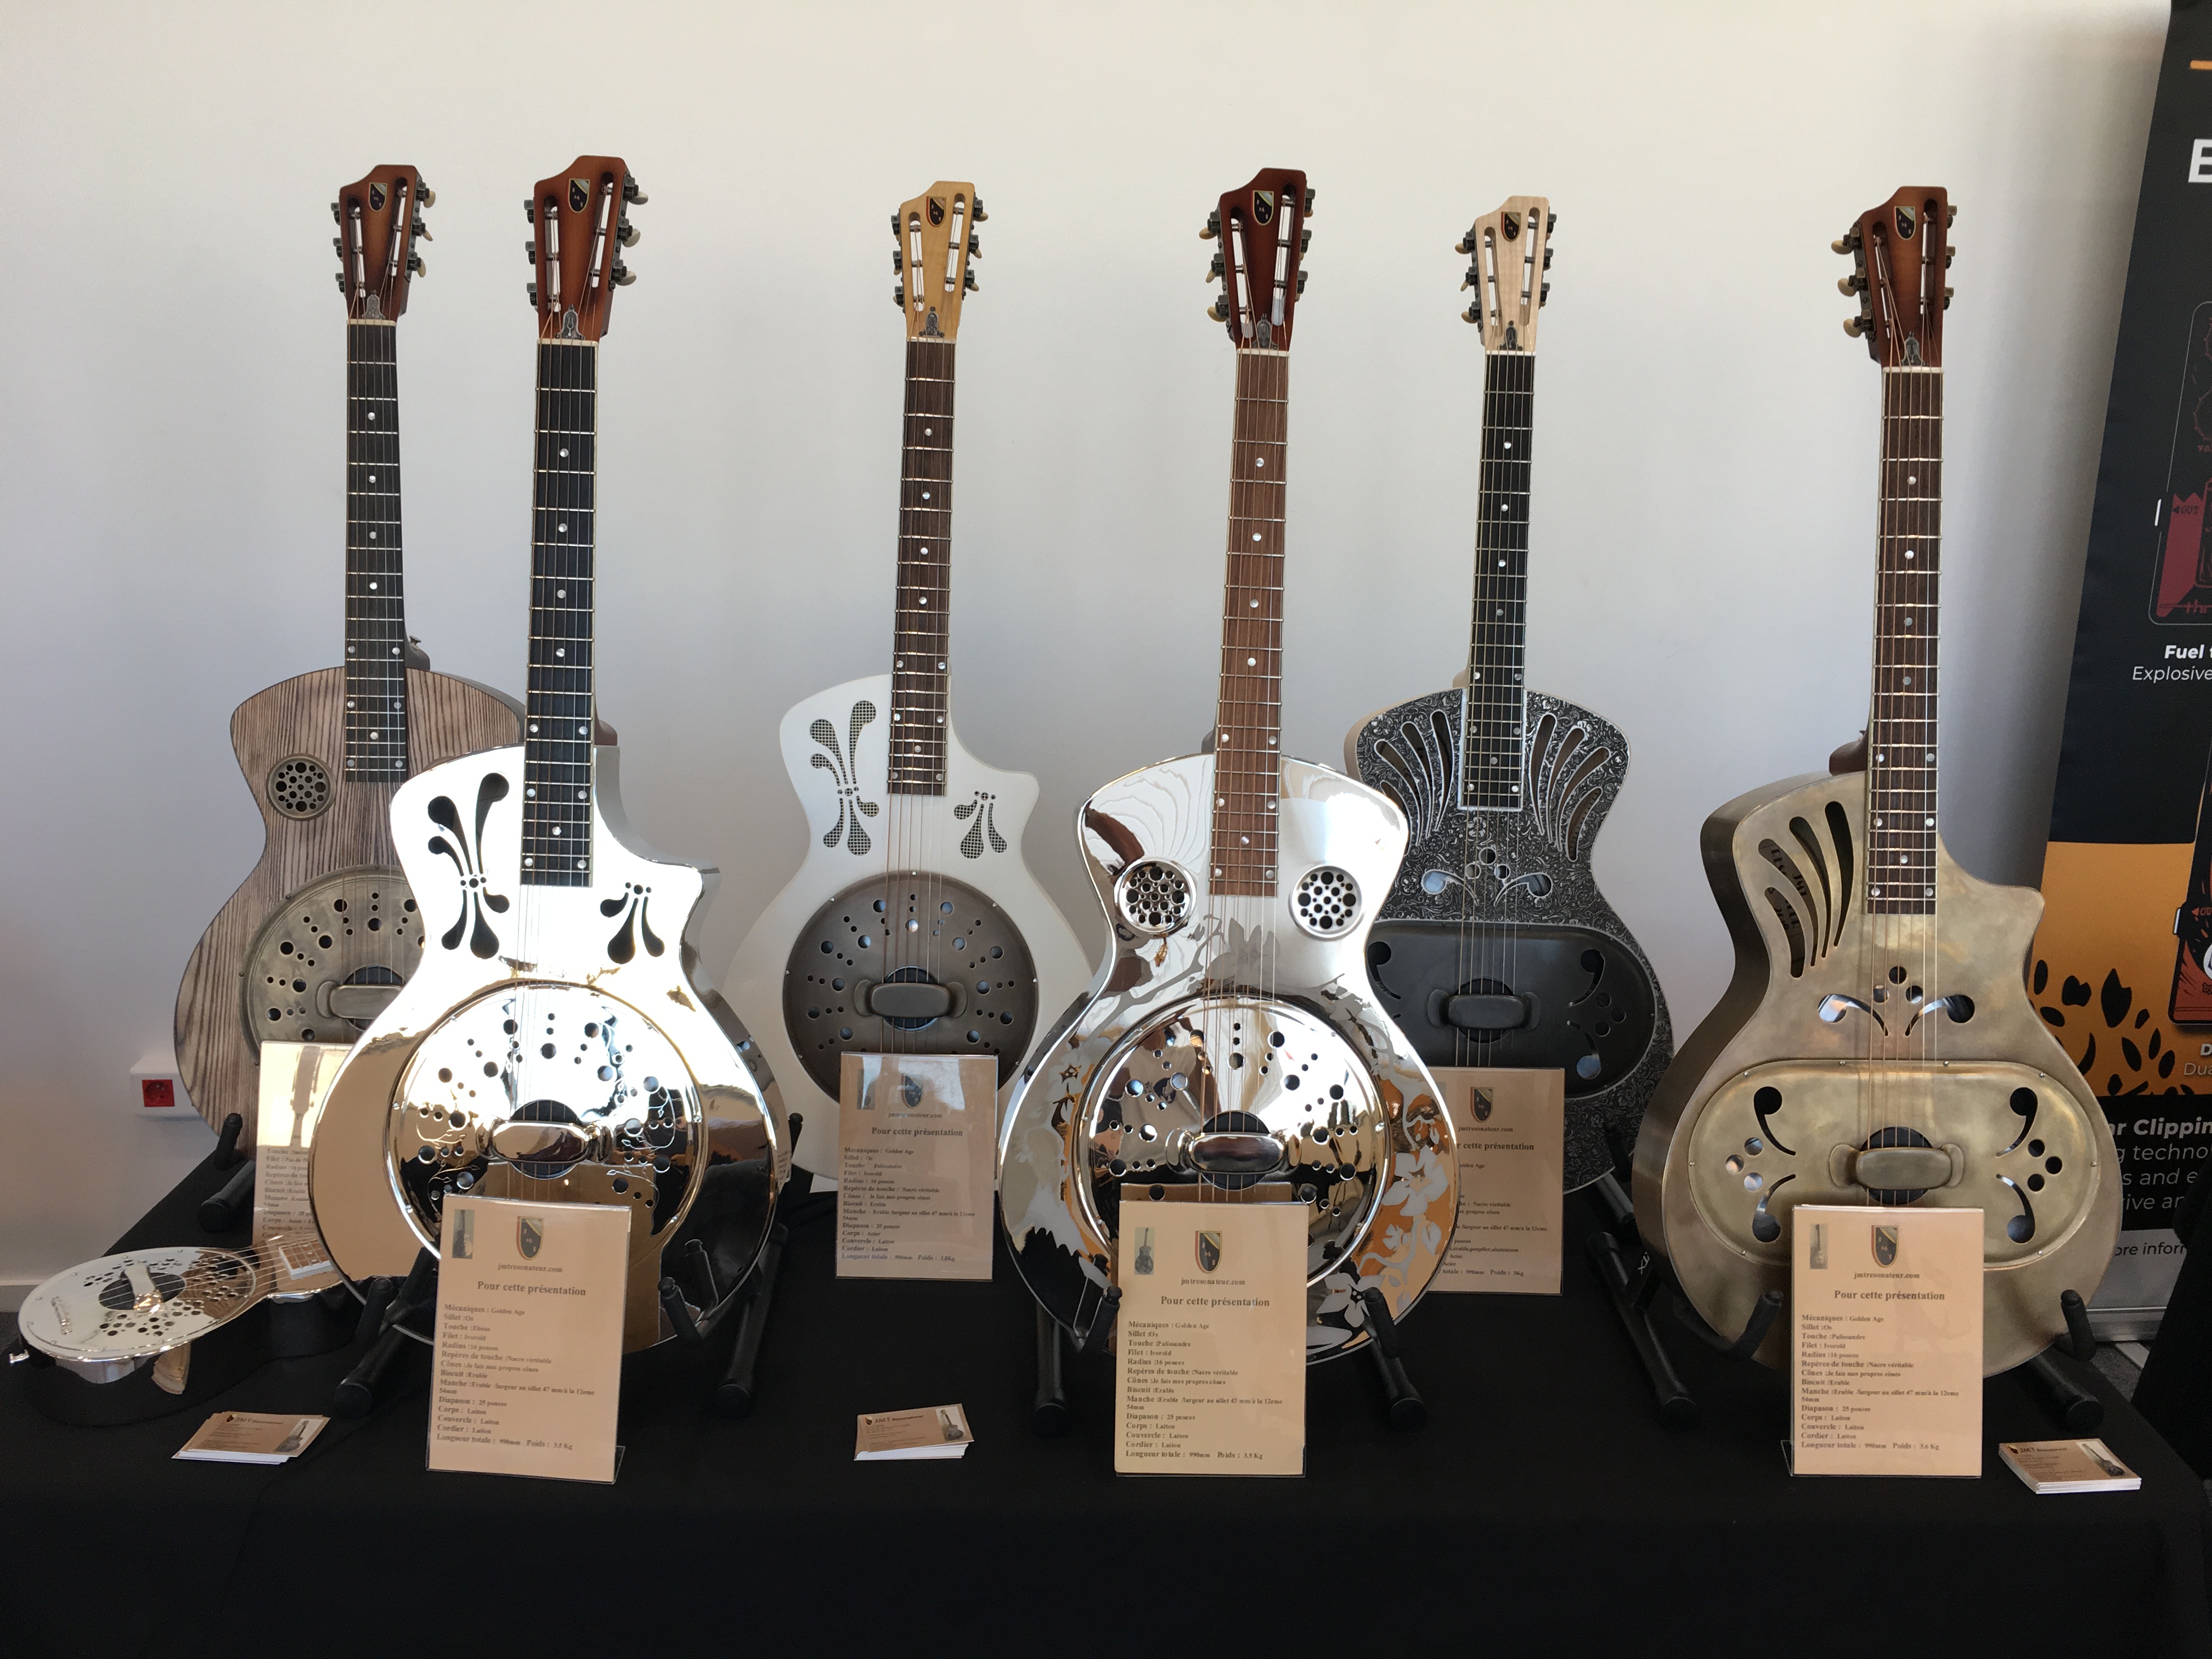 Salon des luthiers de Puteaux 2019 organisé par La Chaîne Guitare – Liste exposants